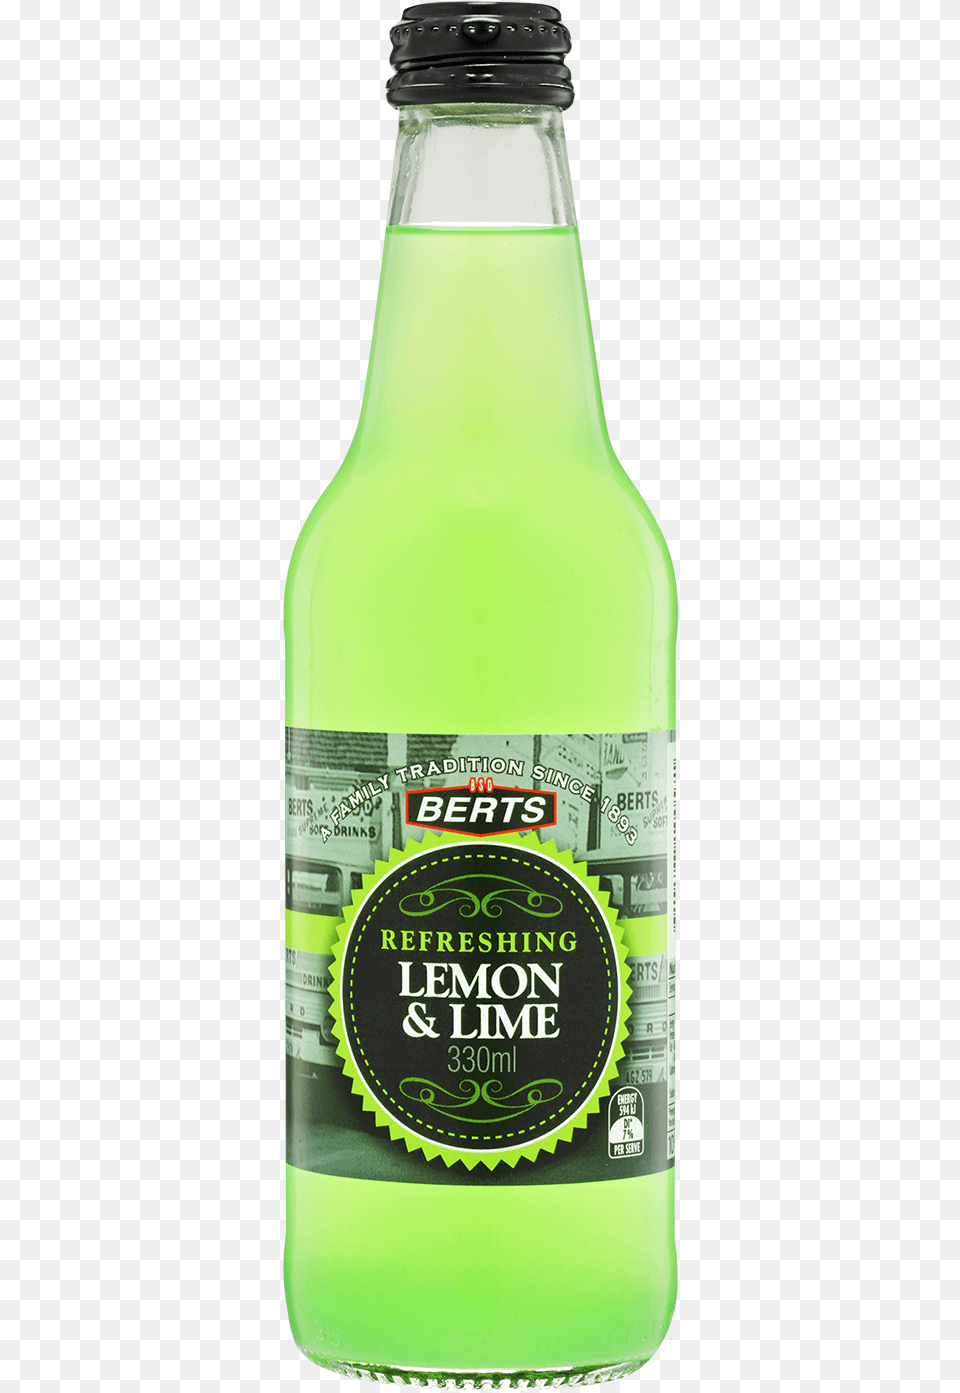 Lemon Amp Lime Lemon Lime Drink, Alcohol, Beer, Beverage, Bottle Png Image